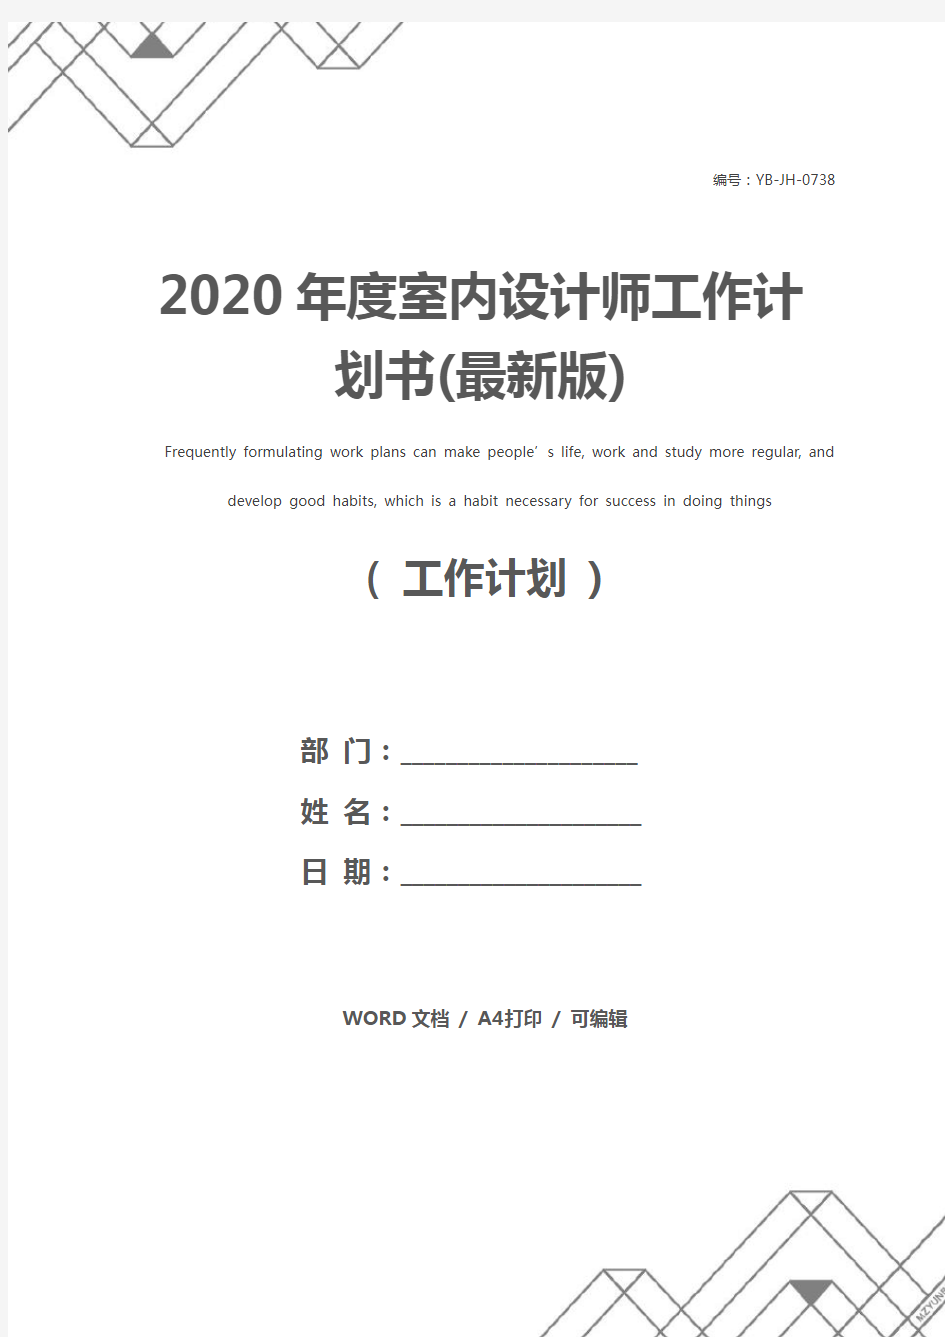 2020年度室内设计师工作计划书(最新版)